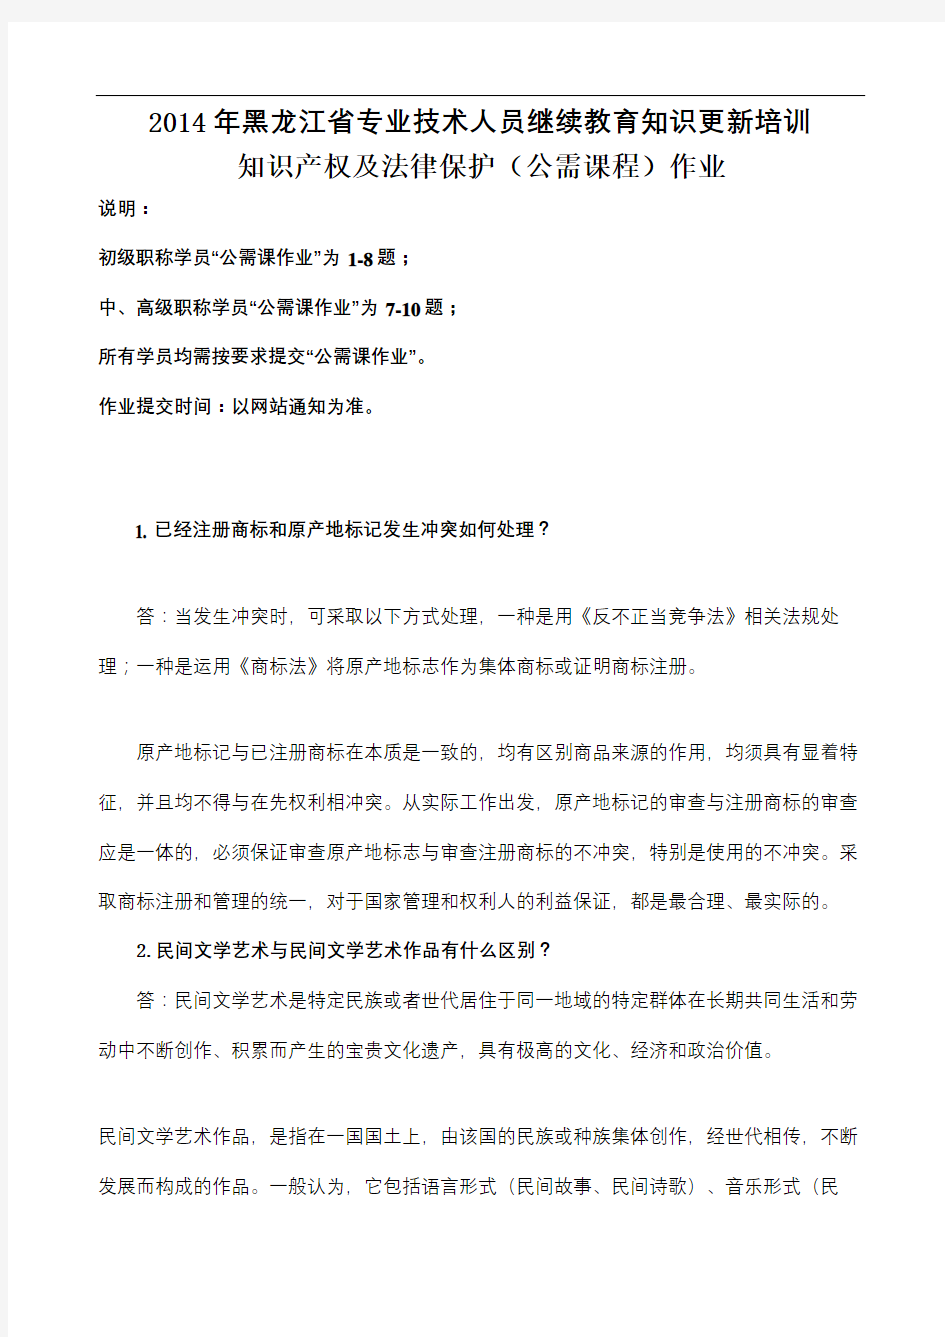 黑龙江省继续教育哈工大公需课作业审批稿